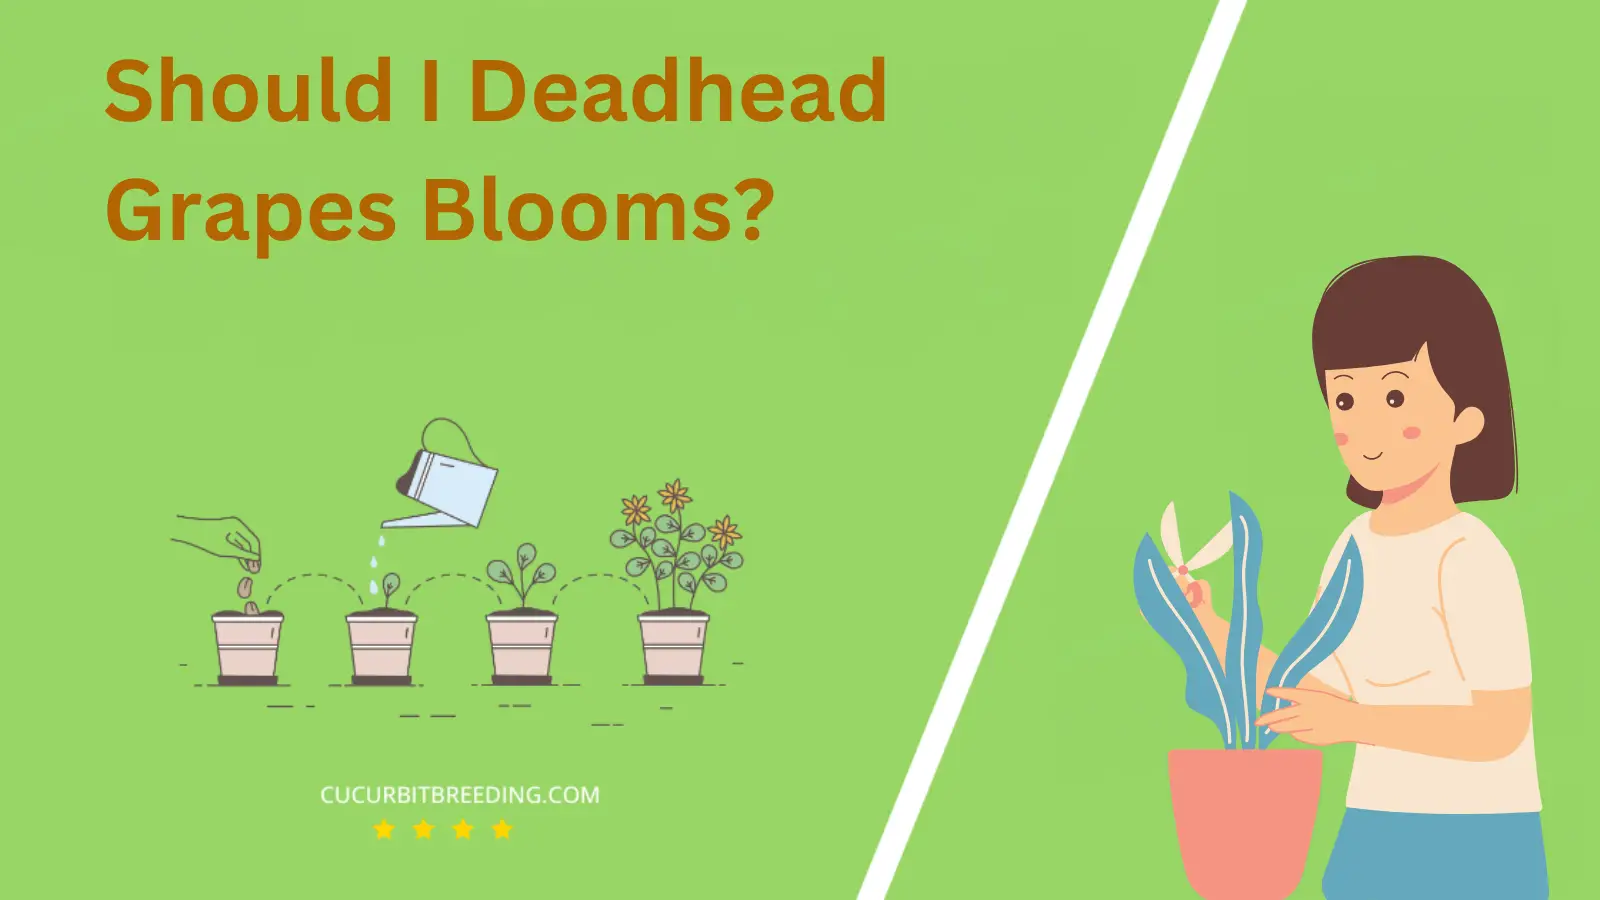 Should I Deadhead Grapes Blooms?